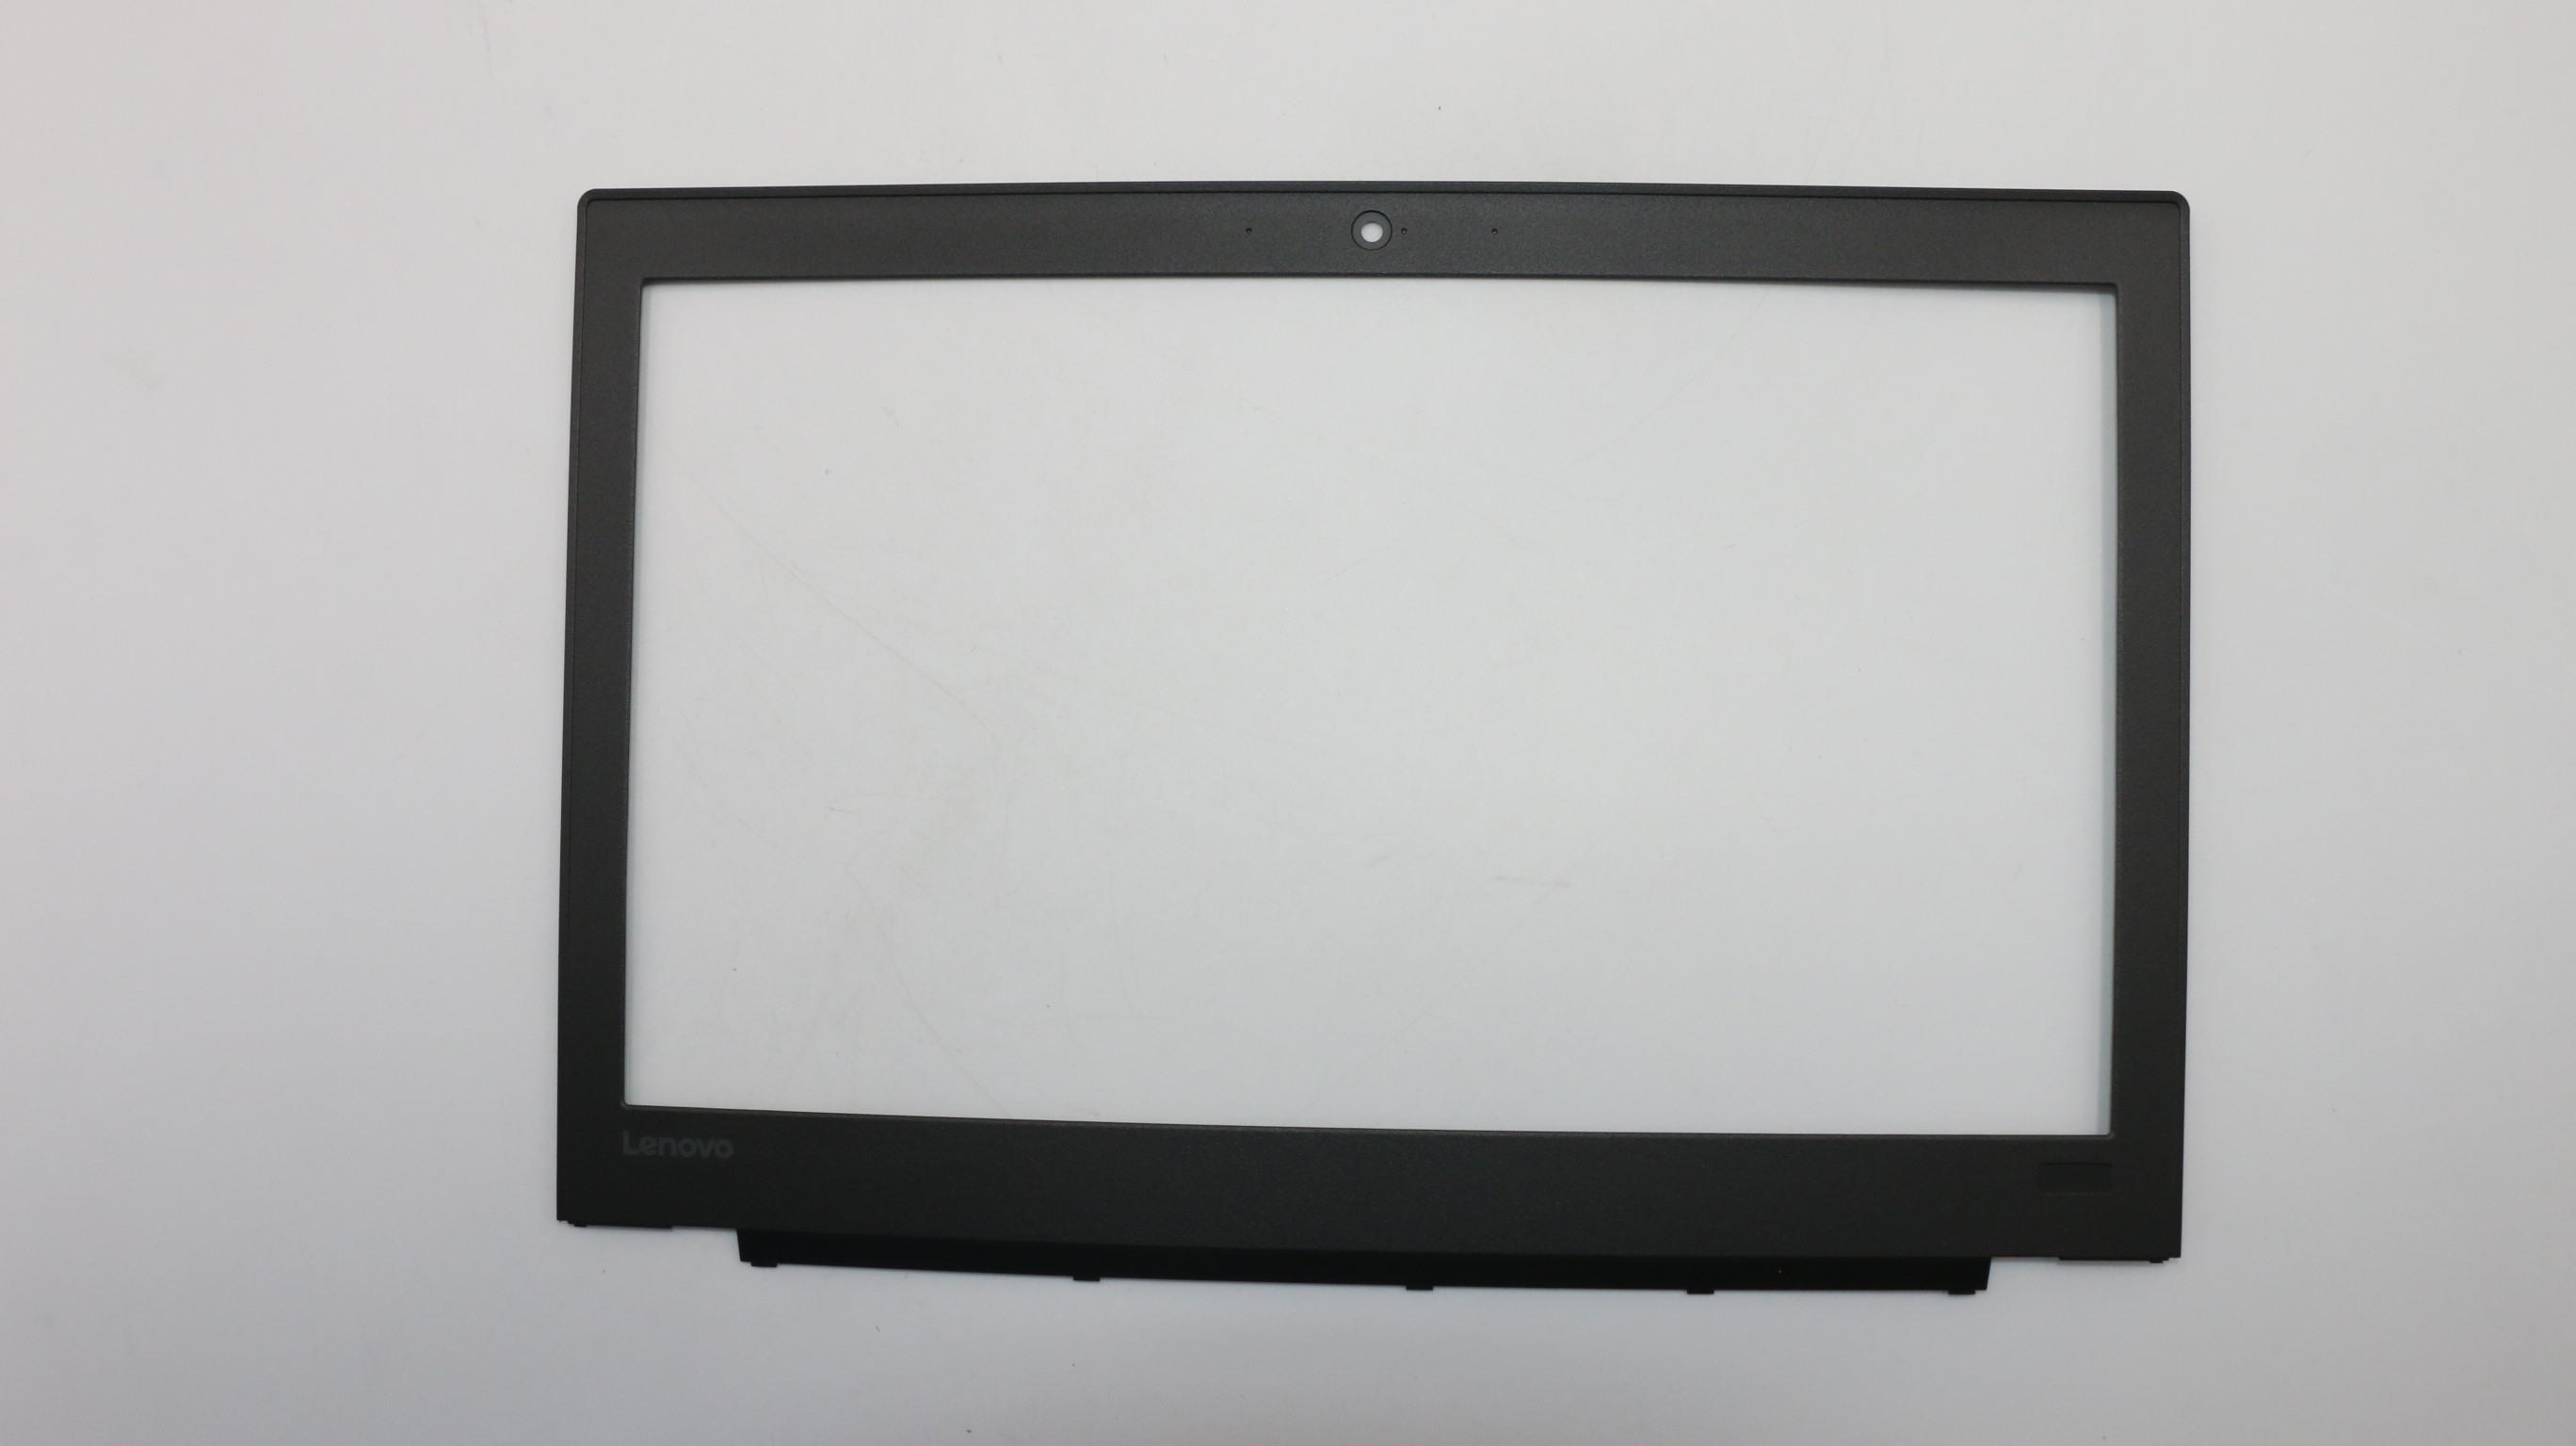 Lenovo ThinkPad X260 LCD Bezel 01AW433, 01AW435